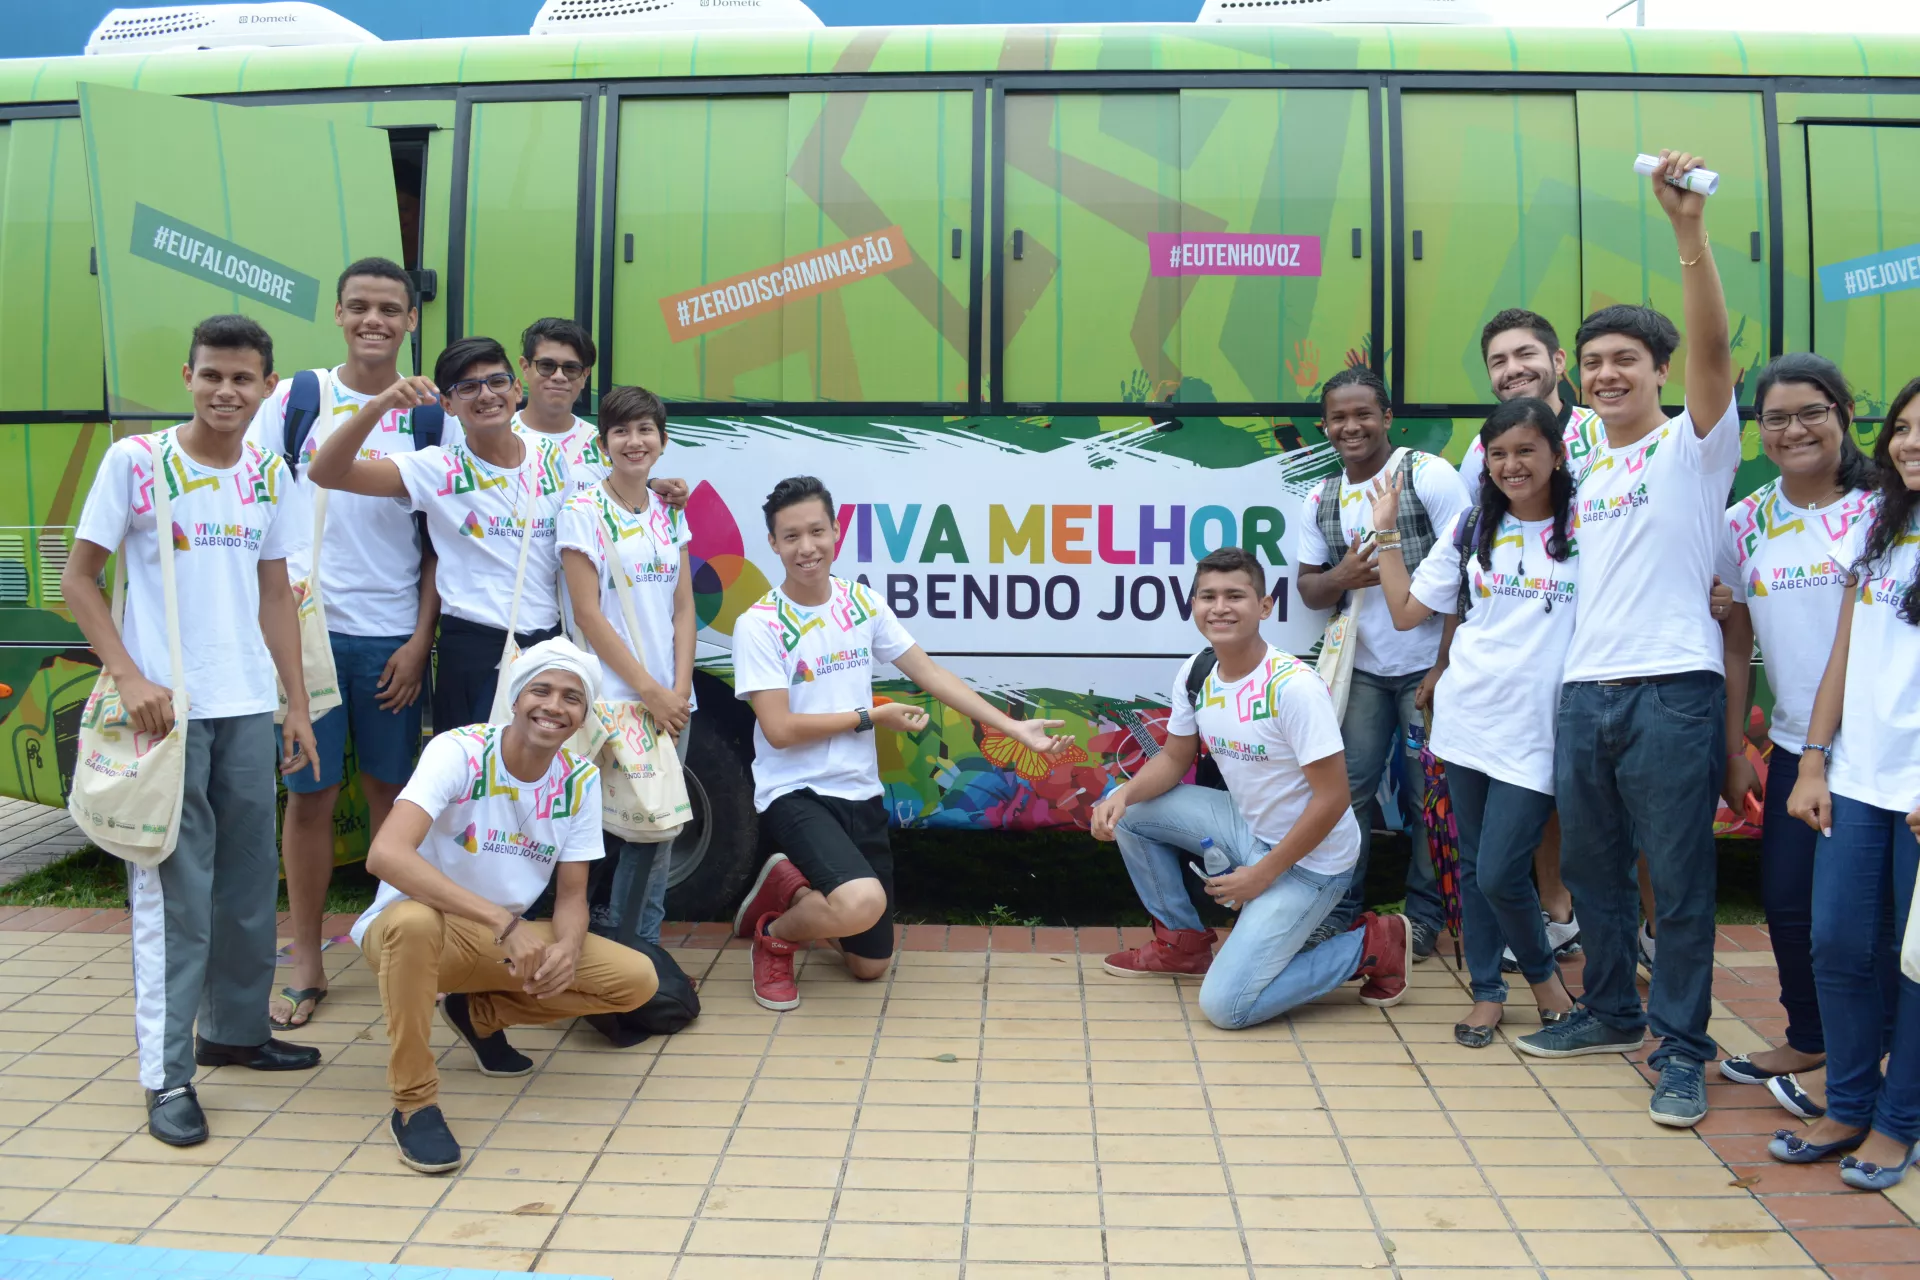 Adolescentes em frente ao ônibus do projeto Viva Melhor Sabendo Jovem